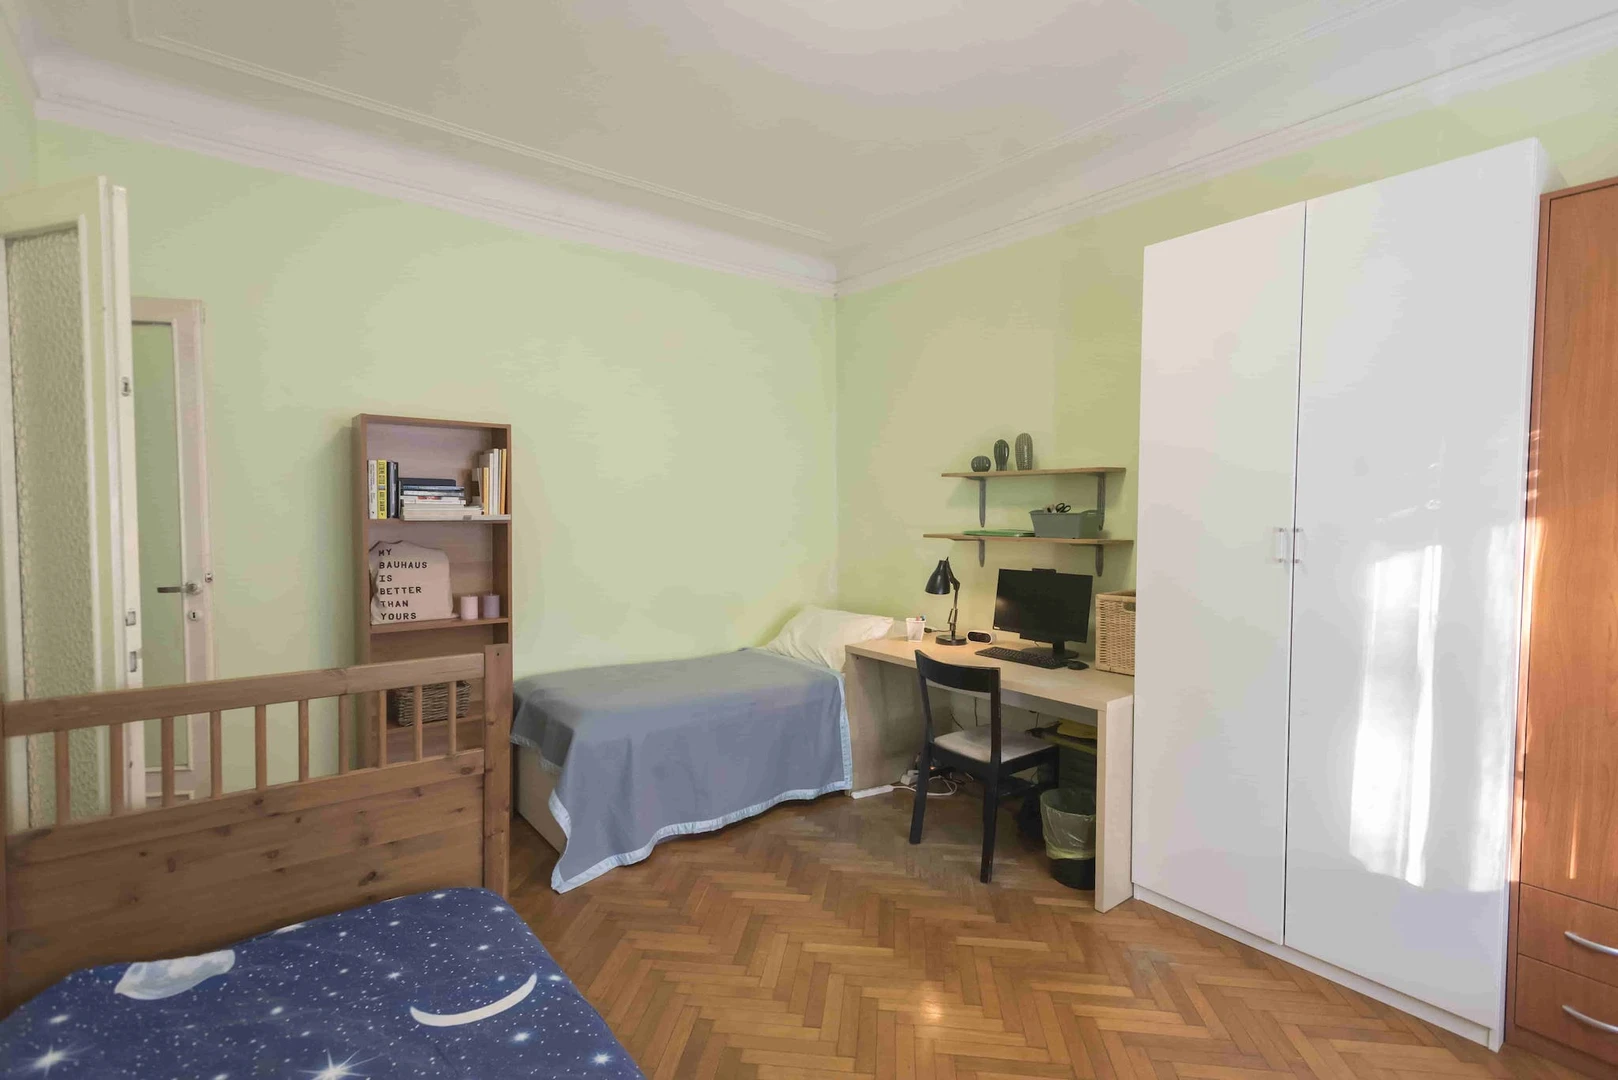 Habitación compartida barata en Milán